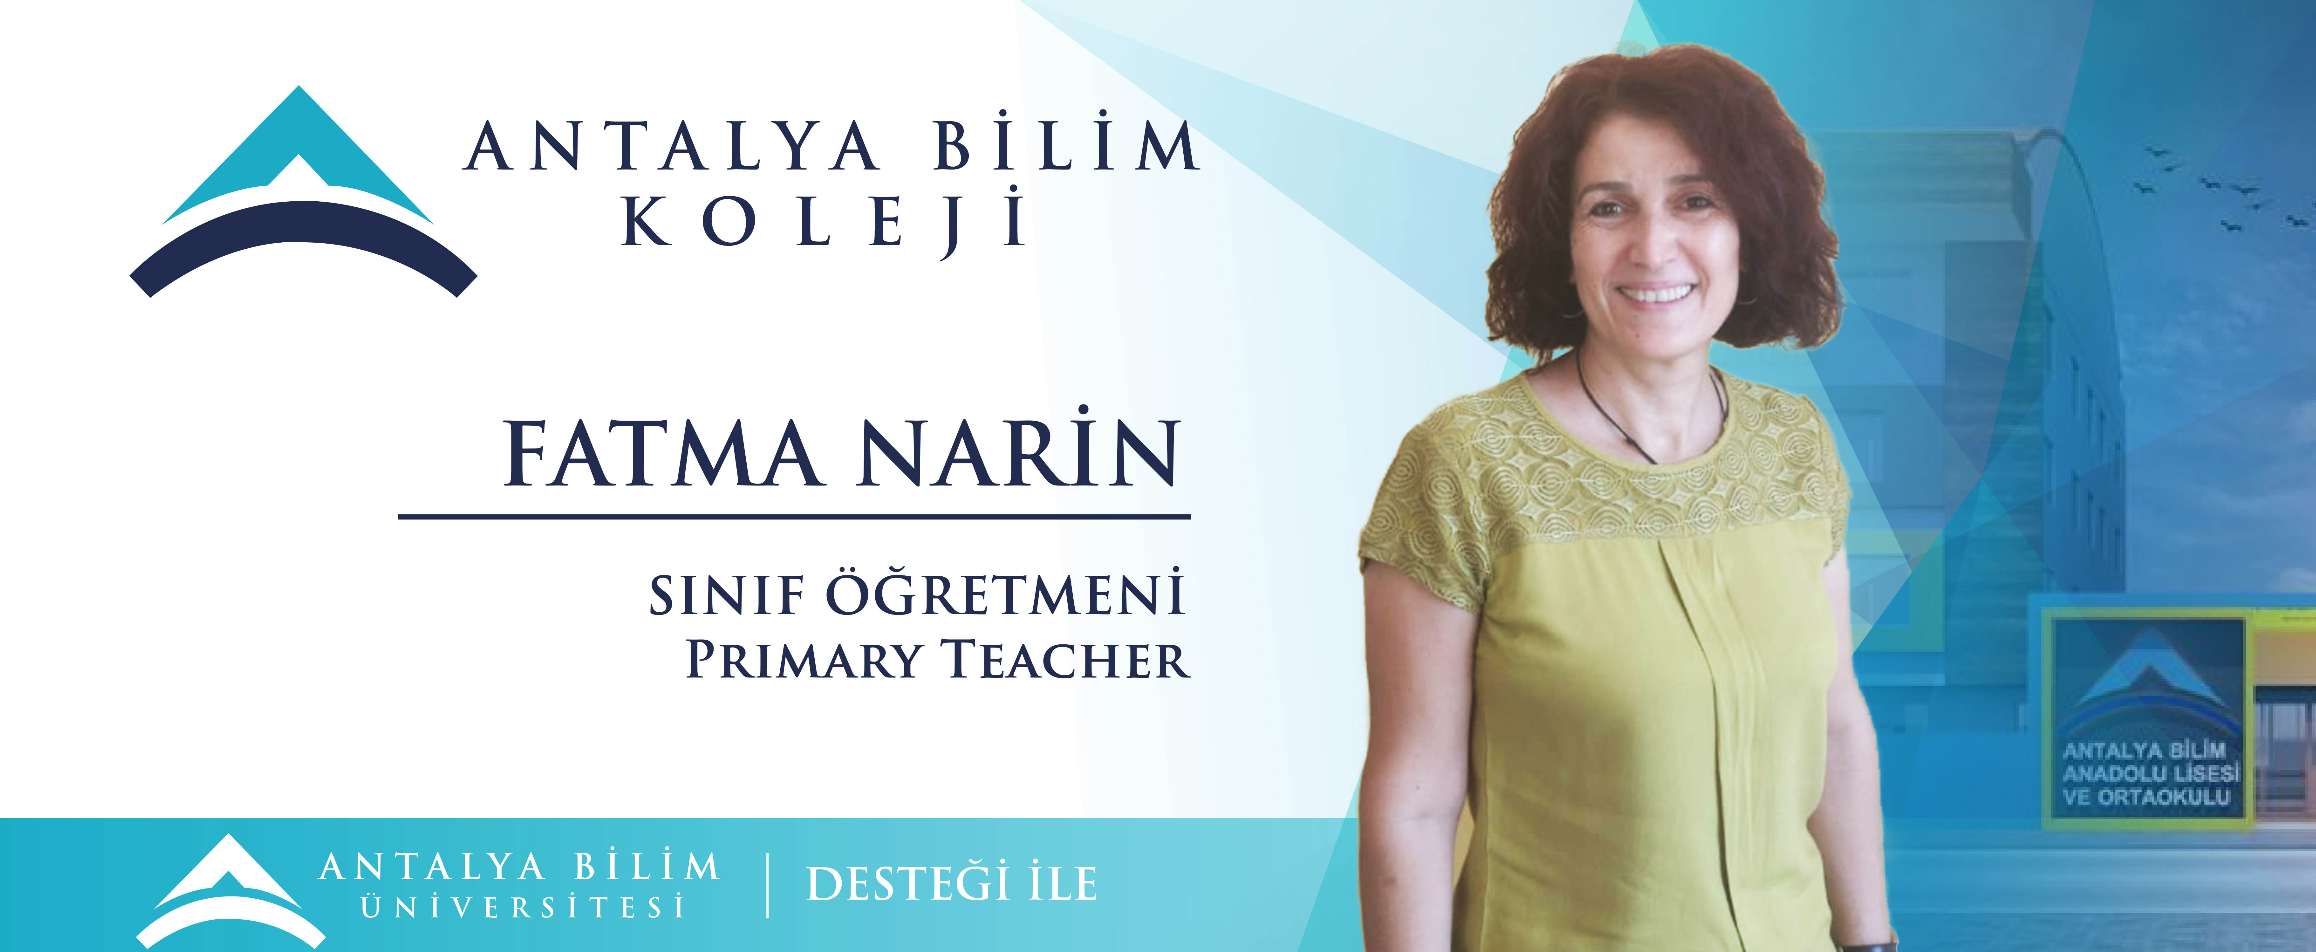 Fatma Narin